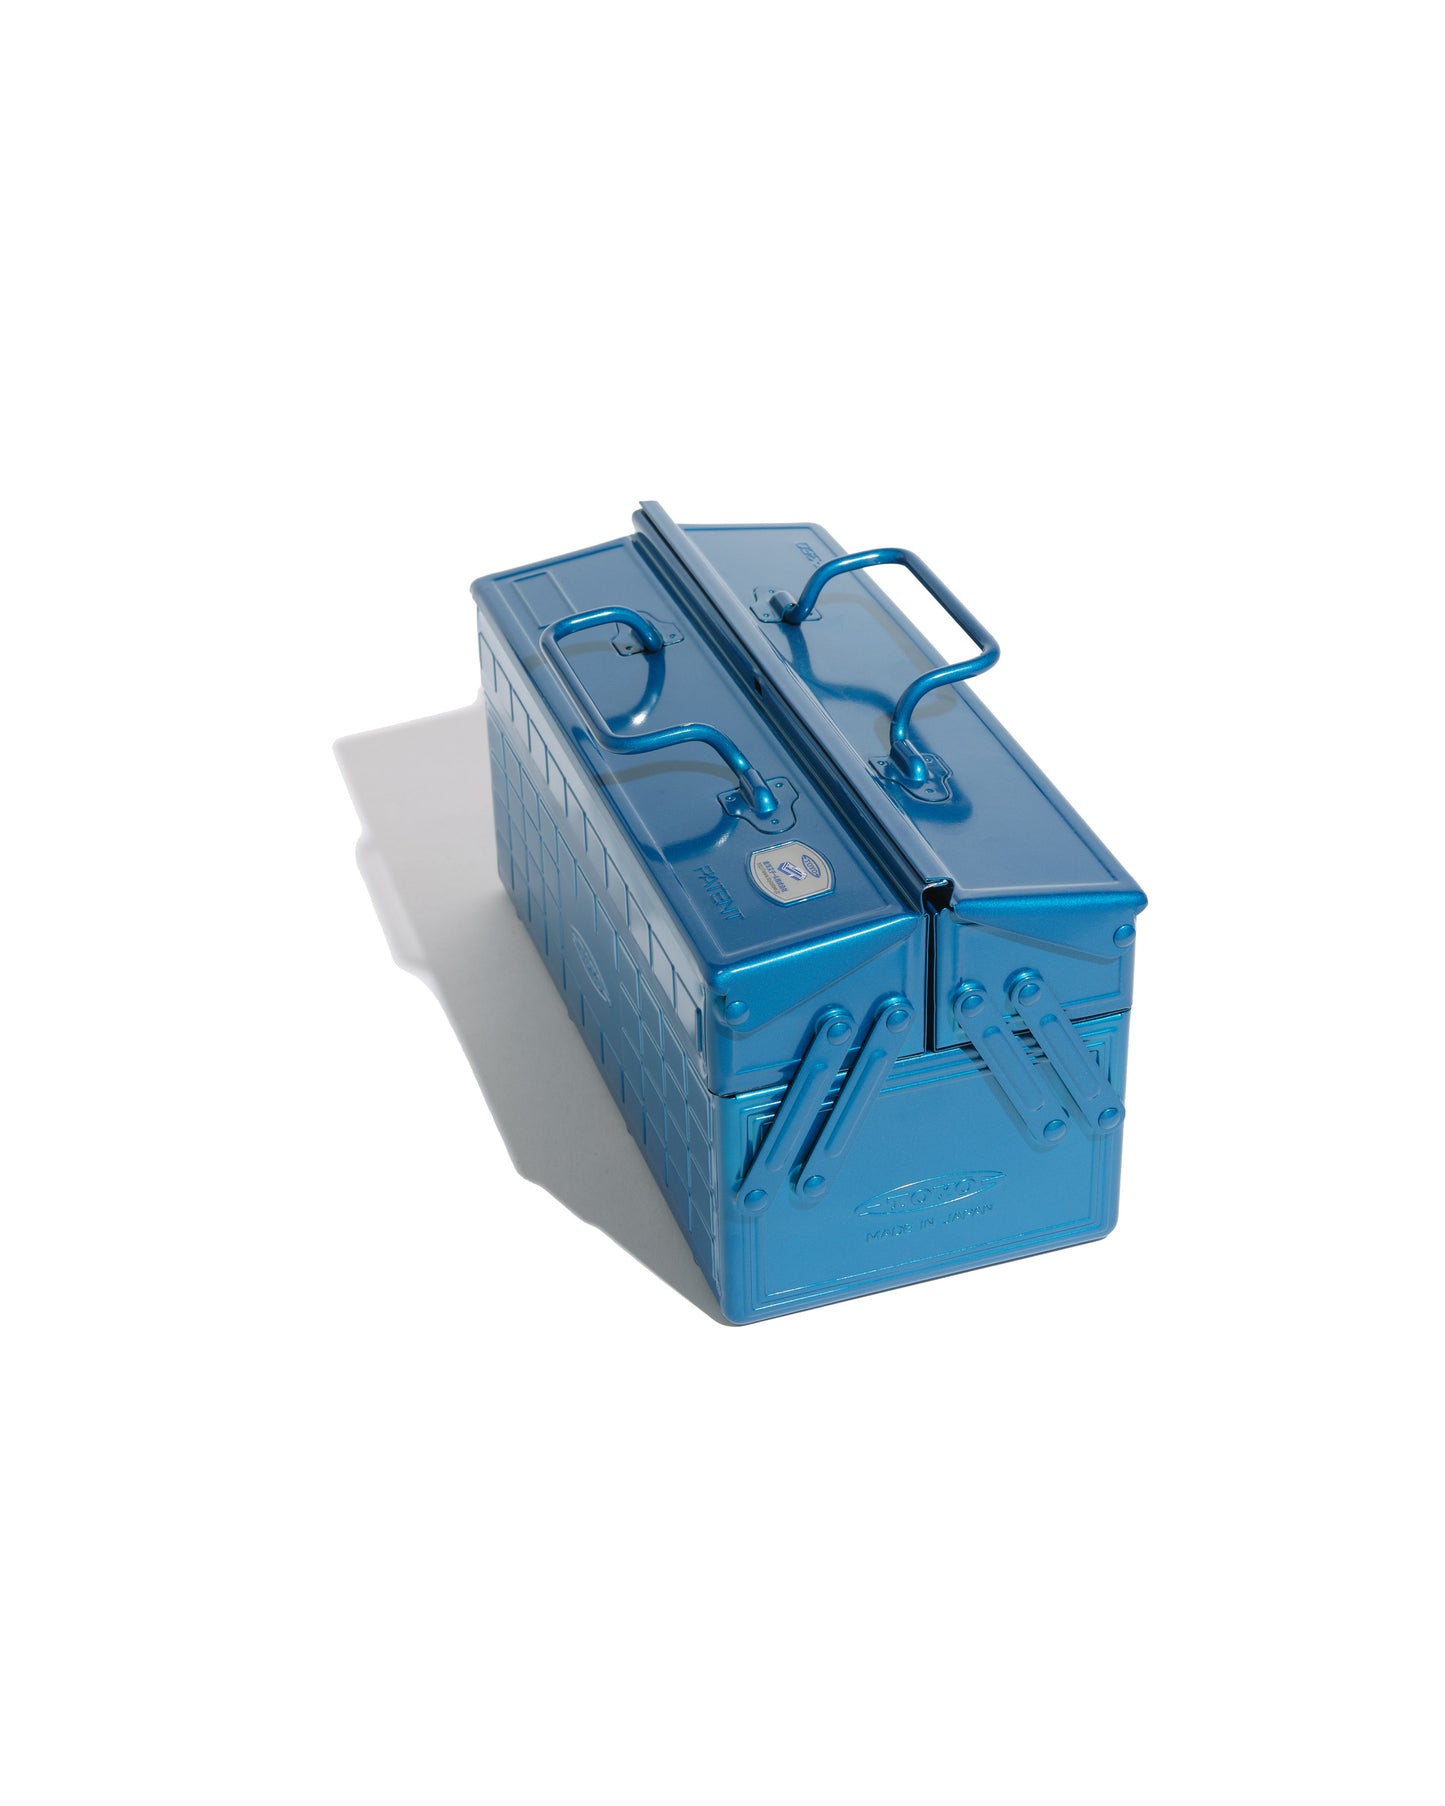 Toyo Steel ST-350 blue tool box